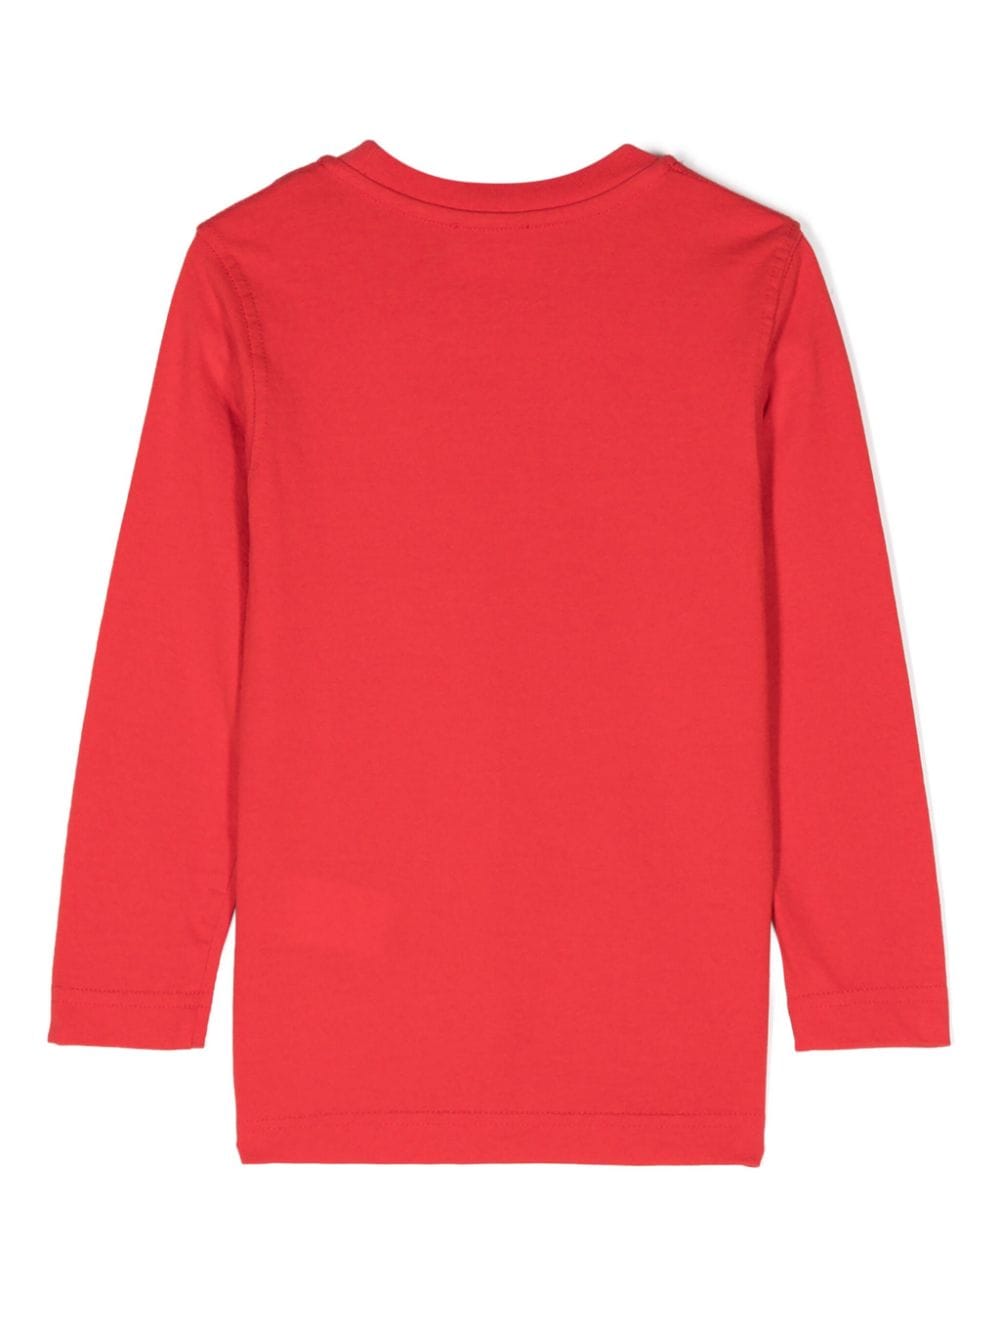 T-shirt per bambino in cotone rossa